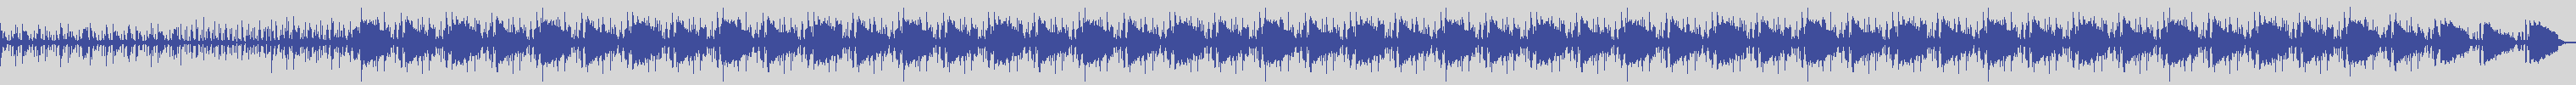 noclouds_chillout [NOC066] Jazzophonik - Mentre [Original Mix] audio wave form